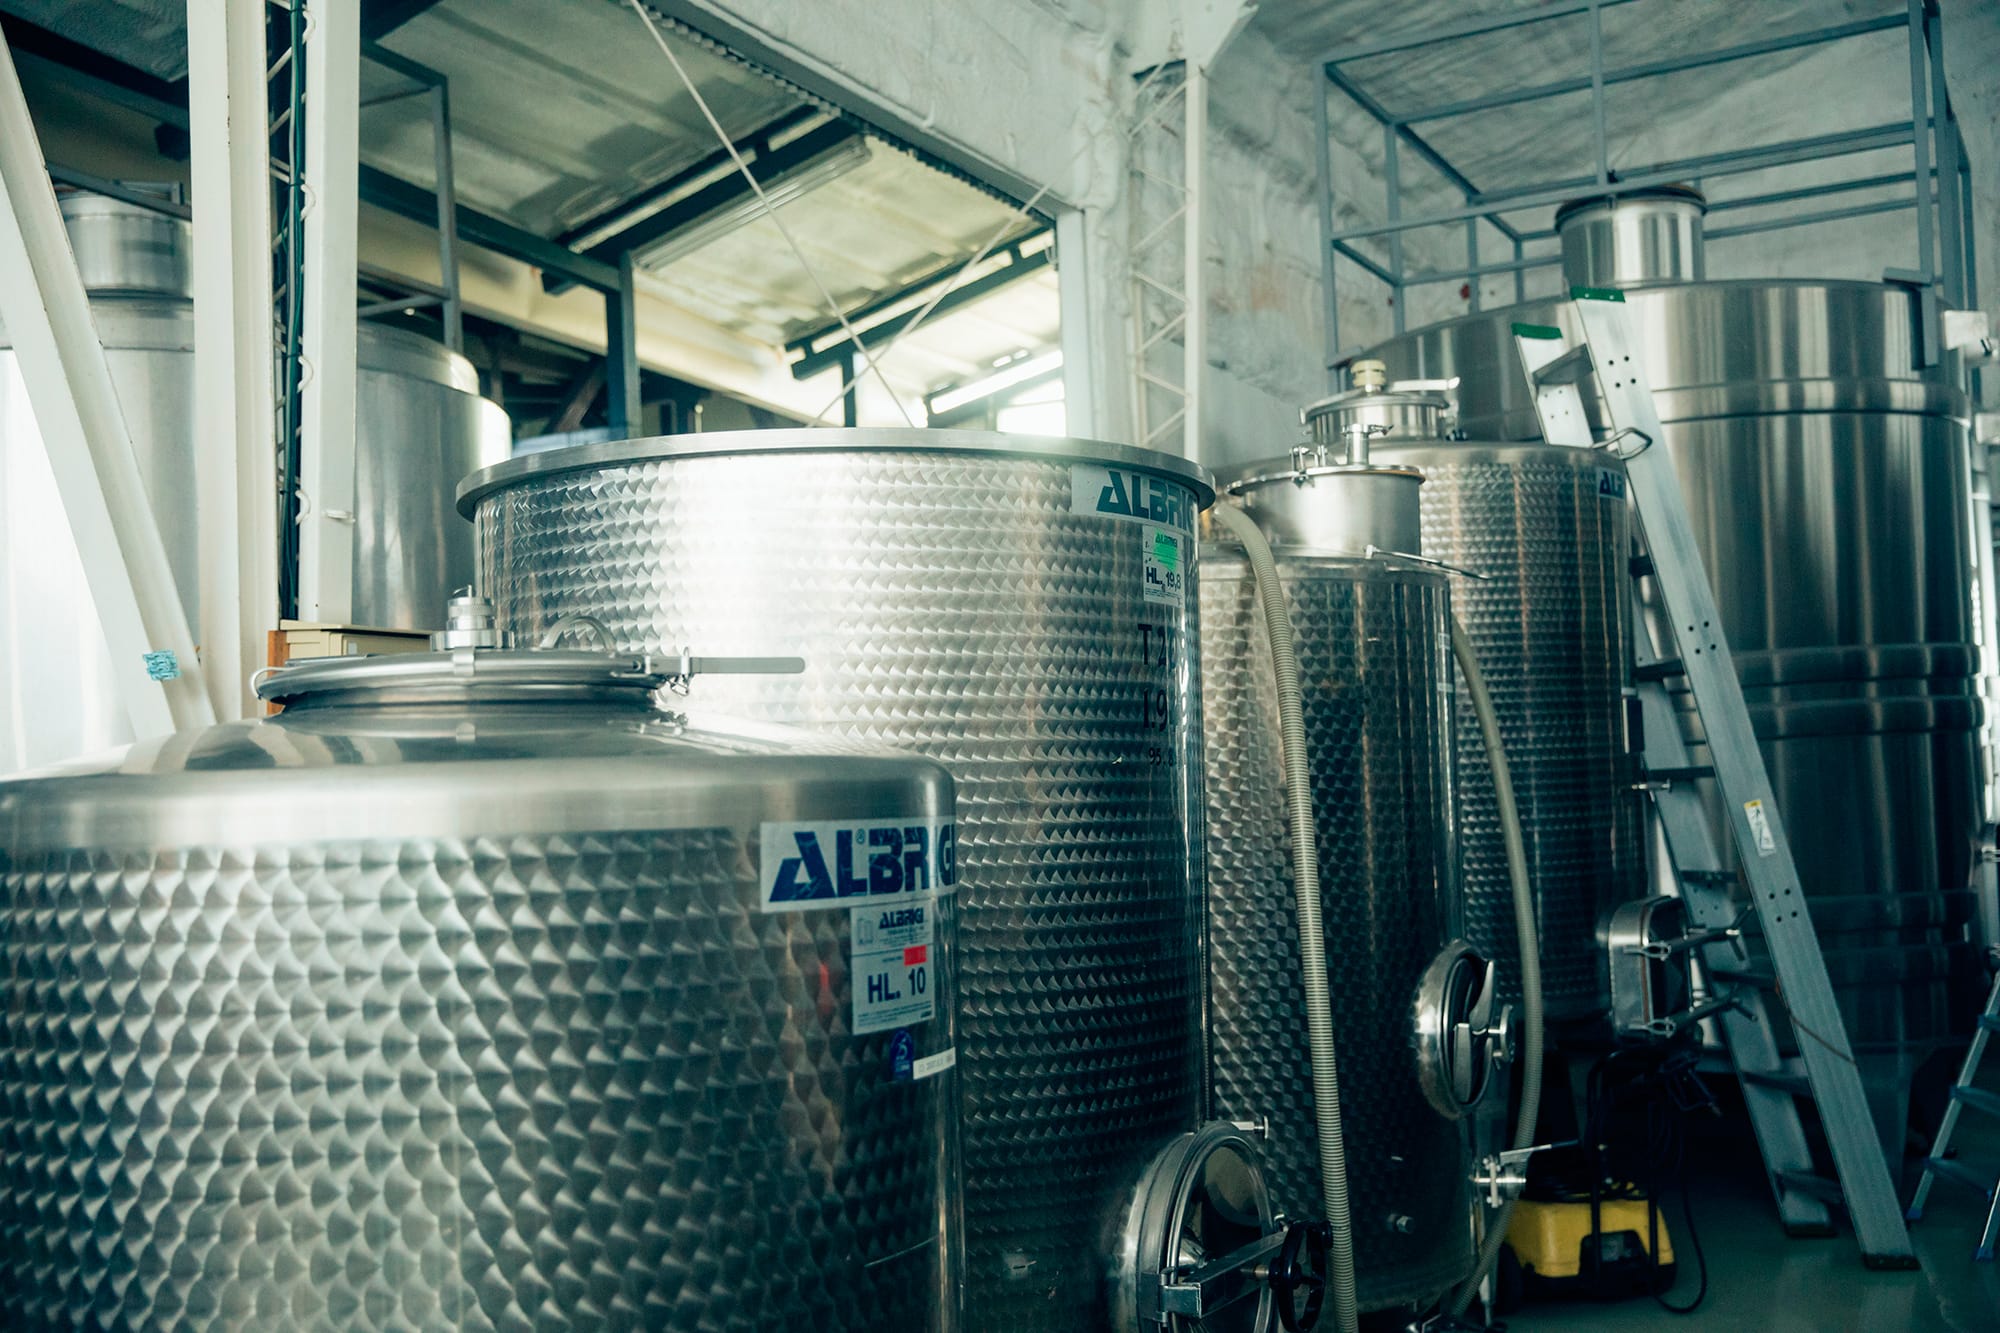 勝沼の醸造施設で使用しているステンレス製の発酵タンク。清潔な環境はピュアな風味のワインを造るうえで欠かせない要素。ボルドーの恩師であるドゥニ・デュブルデュー教授は、甲州の果汁を酸化させないよう厳命したという。